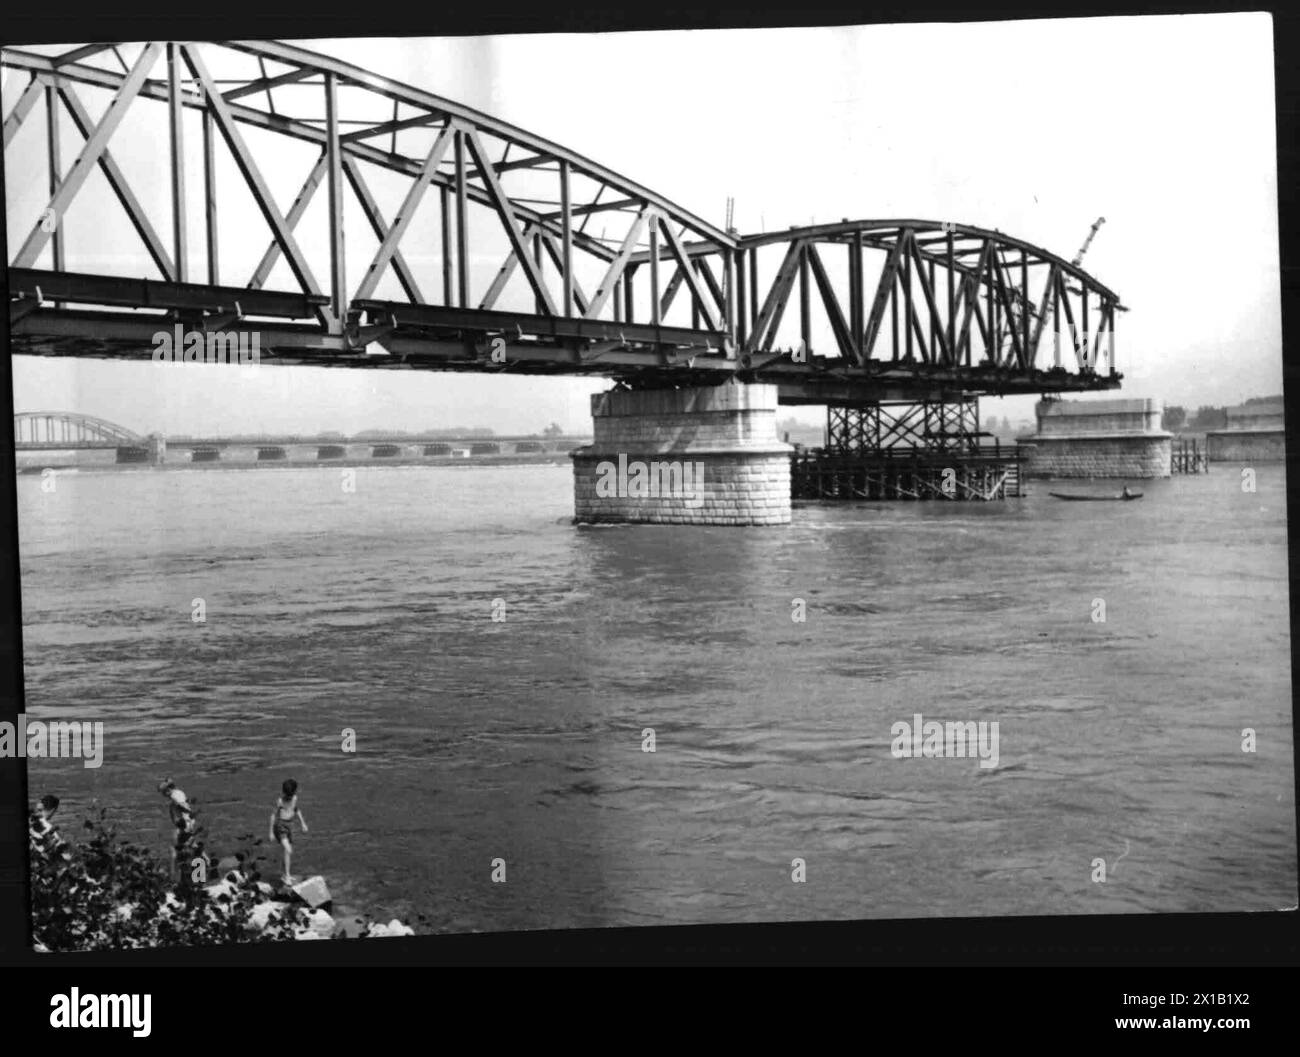 Ricostruzione del Nordbahnbruecke (ponte Nordbahn), vista dalla banchina commerciale, 1958 - 19580101 PD2442 - Rechteinfo: Rights Managed (RM) Foto Stock